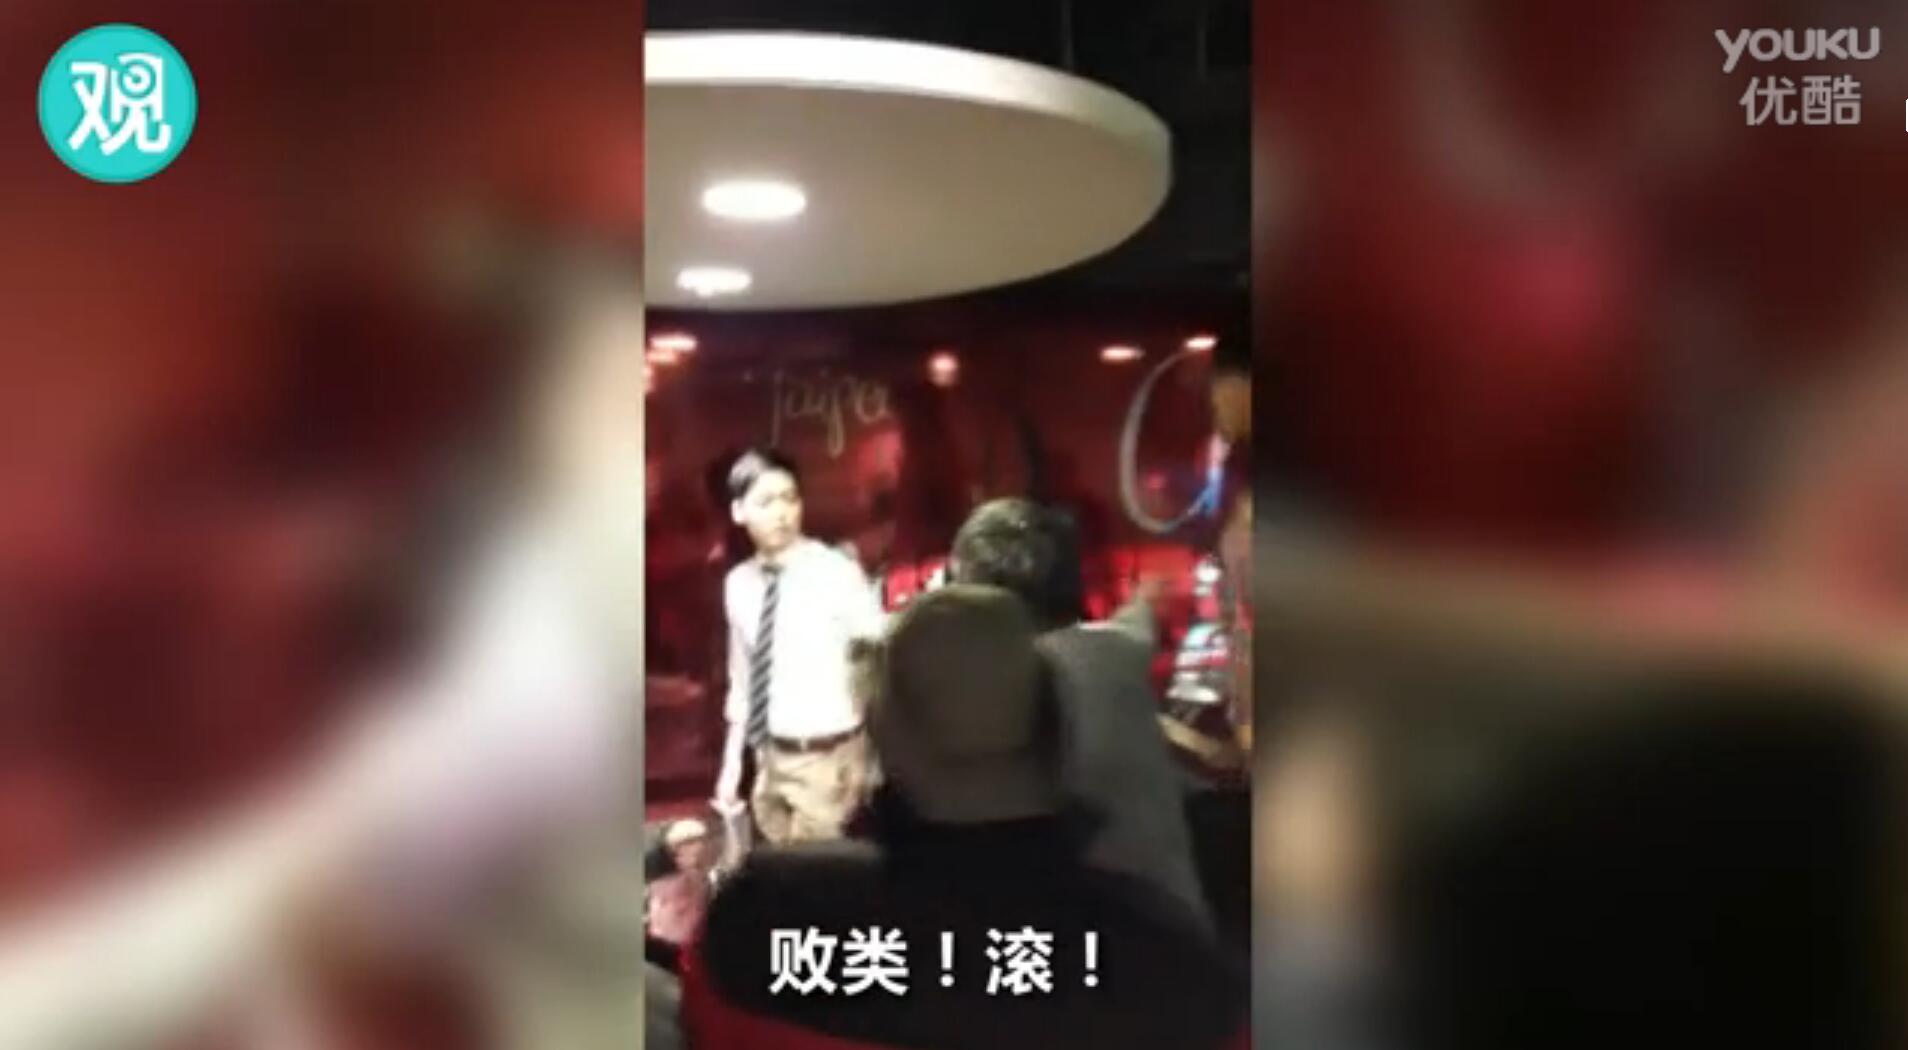 “港独”分子在台湾“播独” 被统派殴打